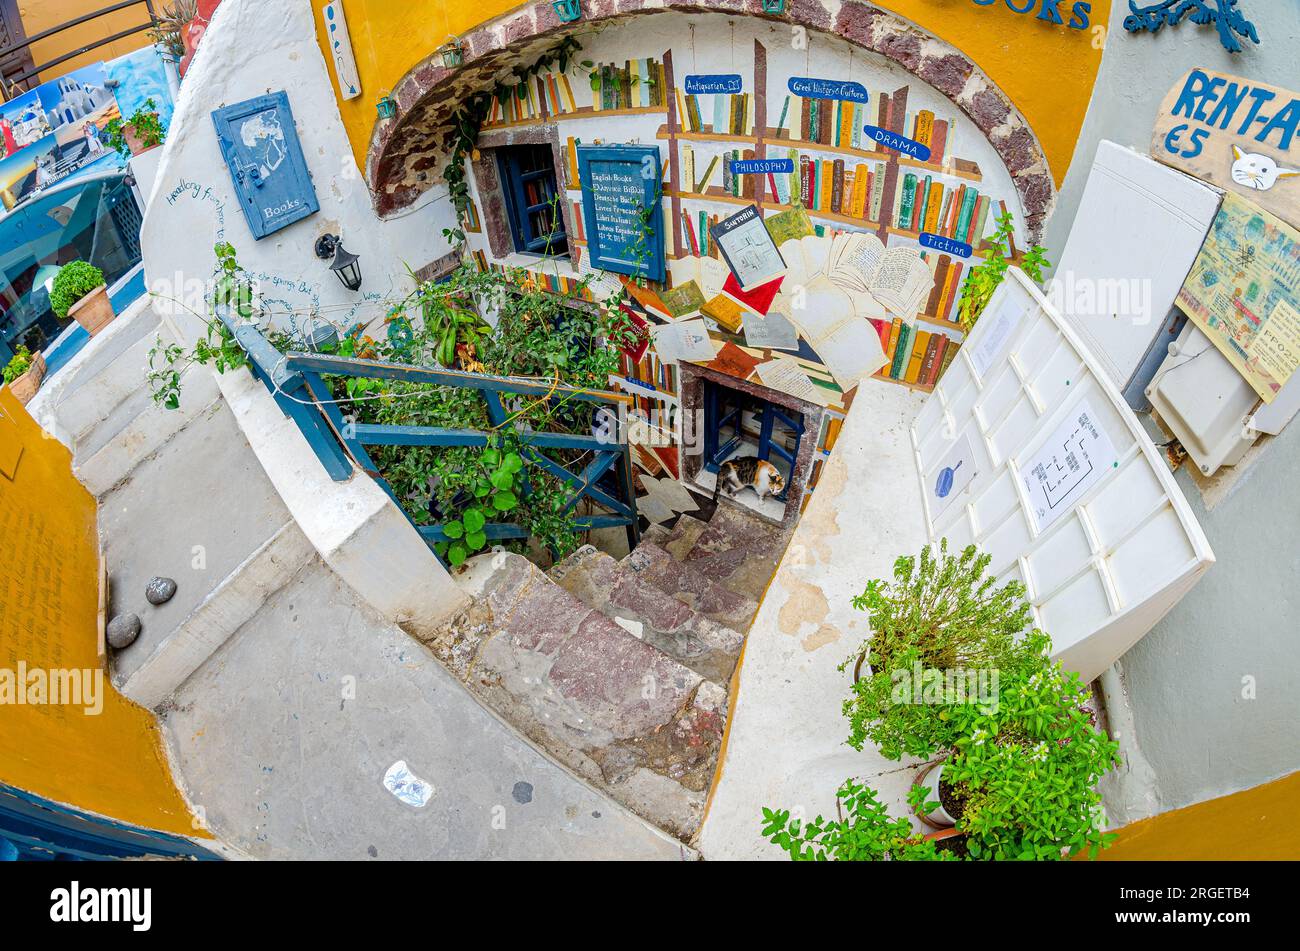 Vor dem Buchladen, verkauft Fiktion- und Sachbücher auf Griechisch, Französisch, Englisch, Spanisch, Chinesisch und mehr im Dorf Oia auf der Insel Santorin Stockfoto